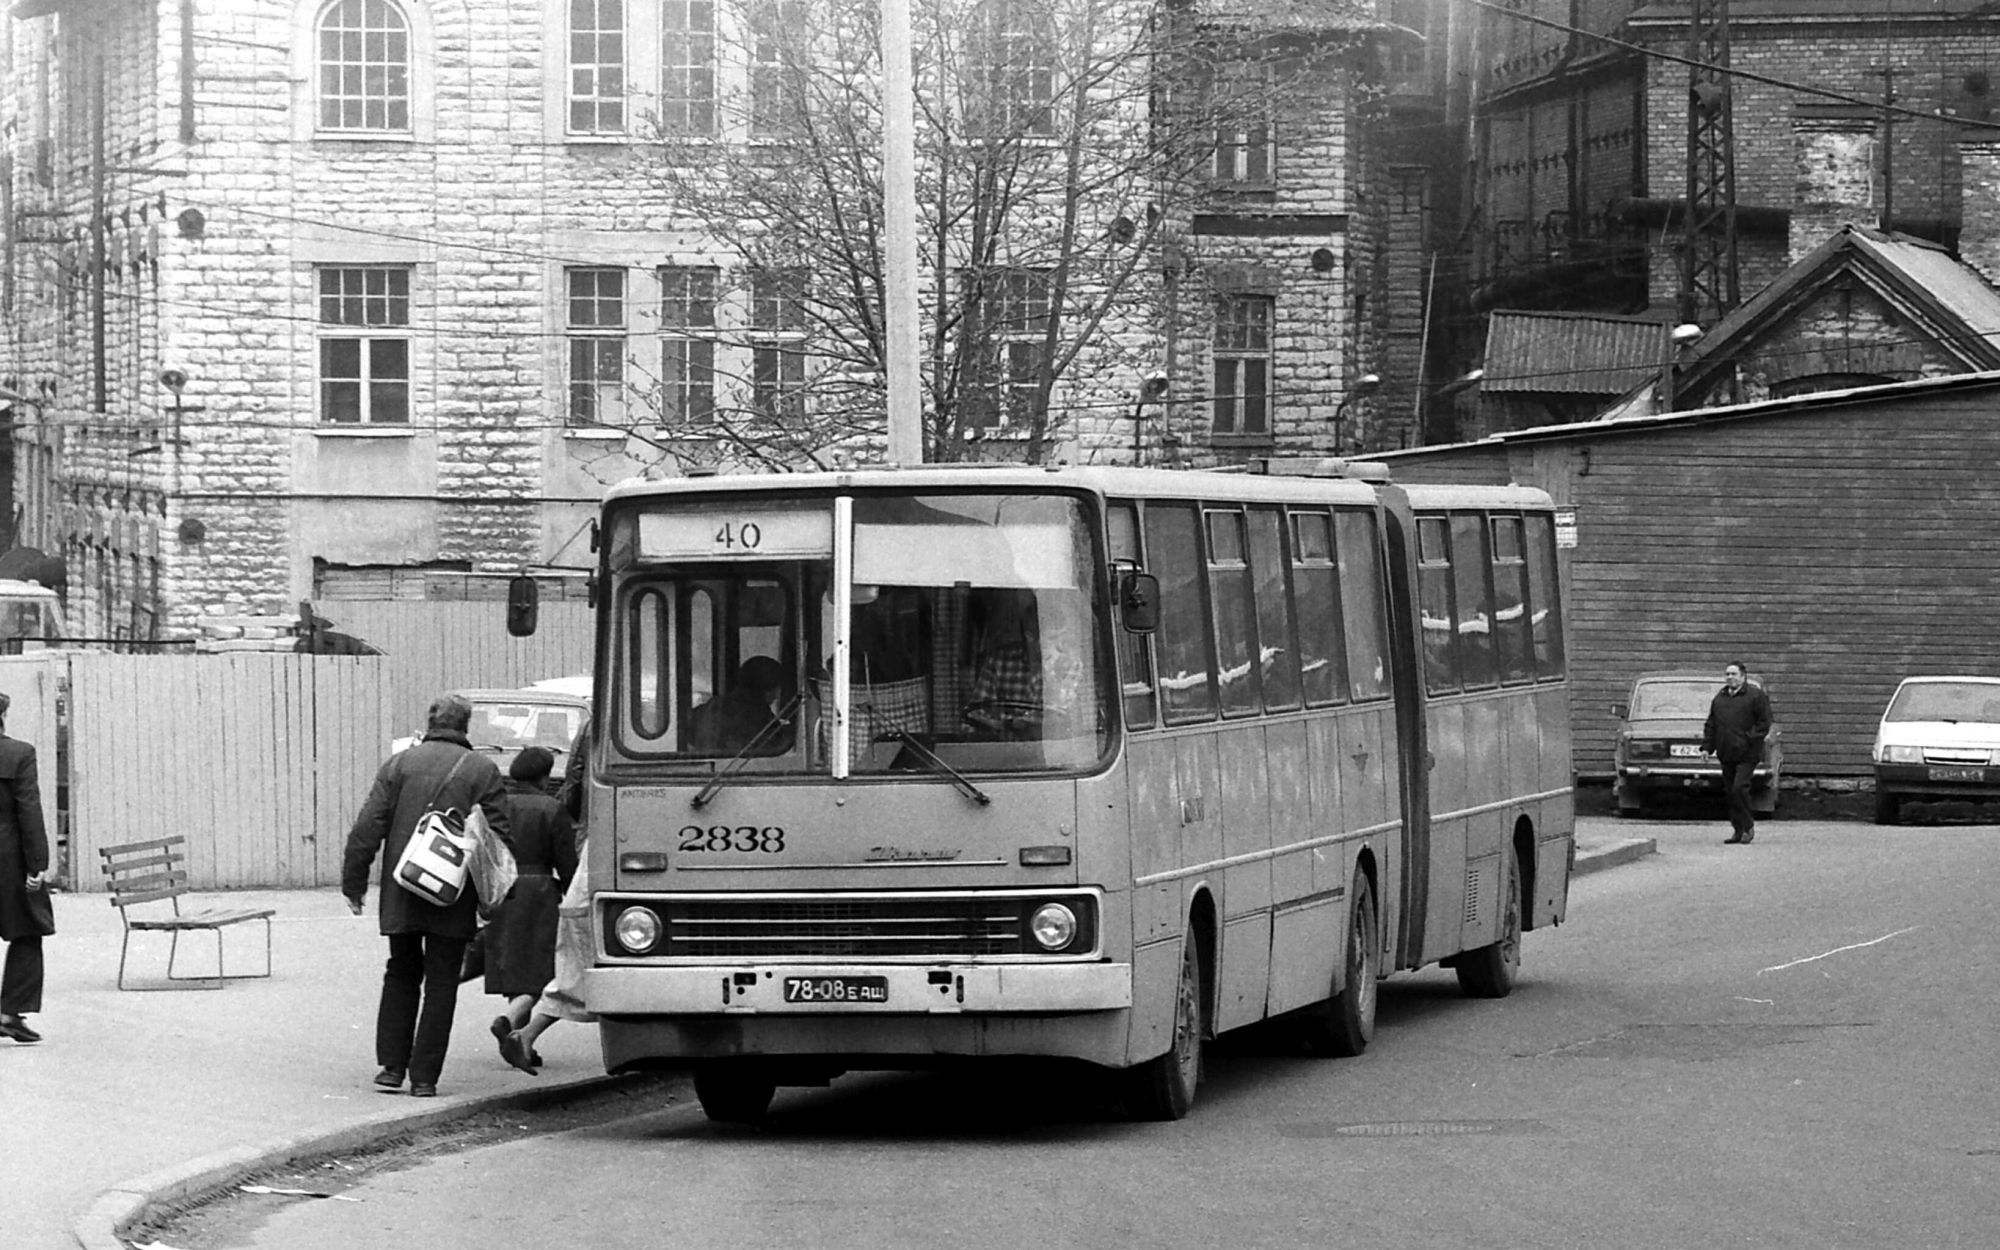 98 aastat bussiliiklust pealinnas – kahekordsest bussist hübriidsõidukini